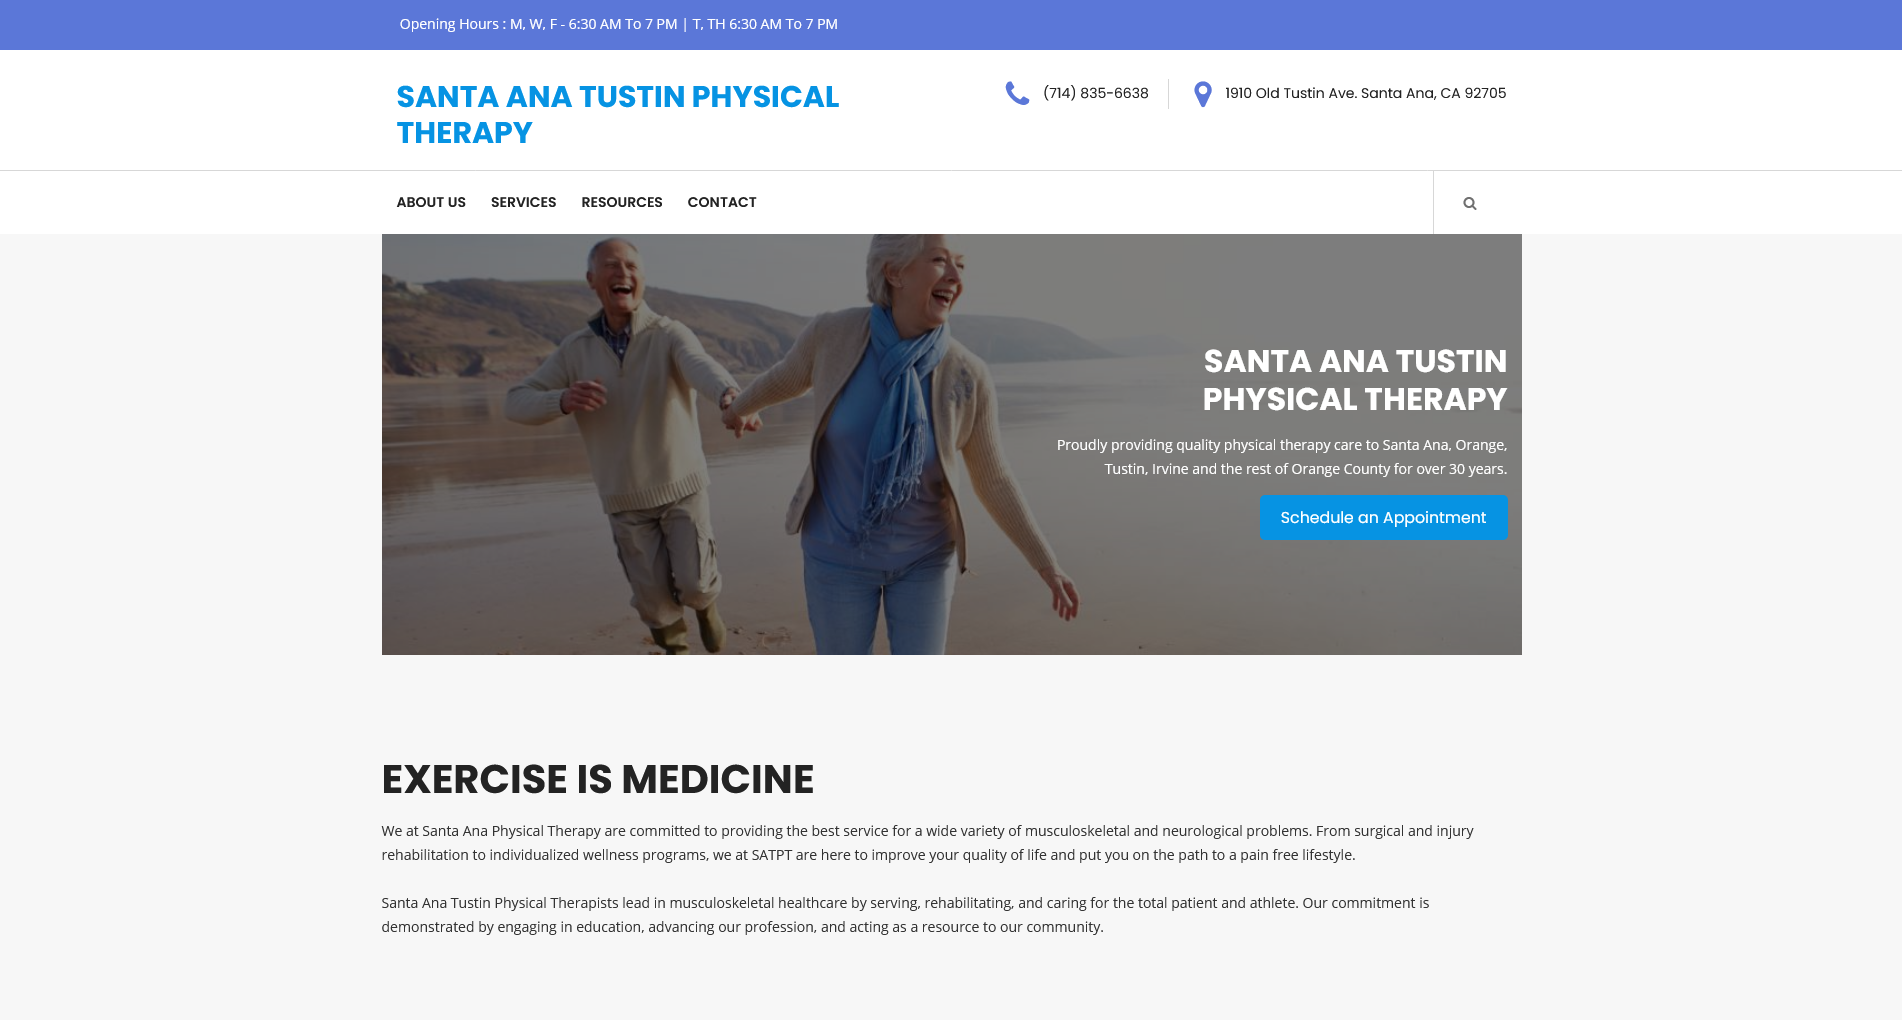 Santa Ana Tustin Physical Therapy